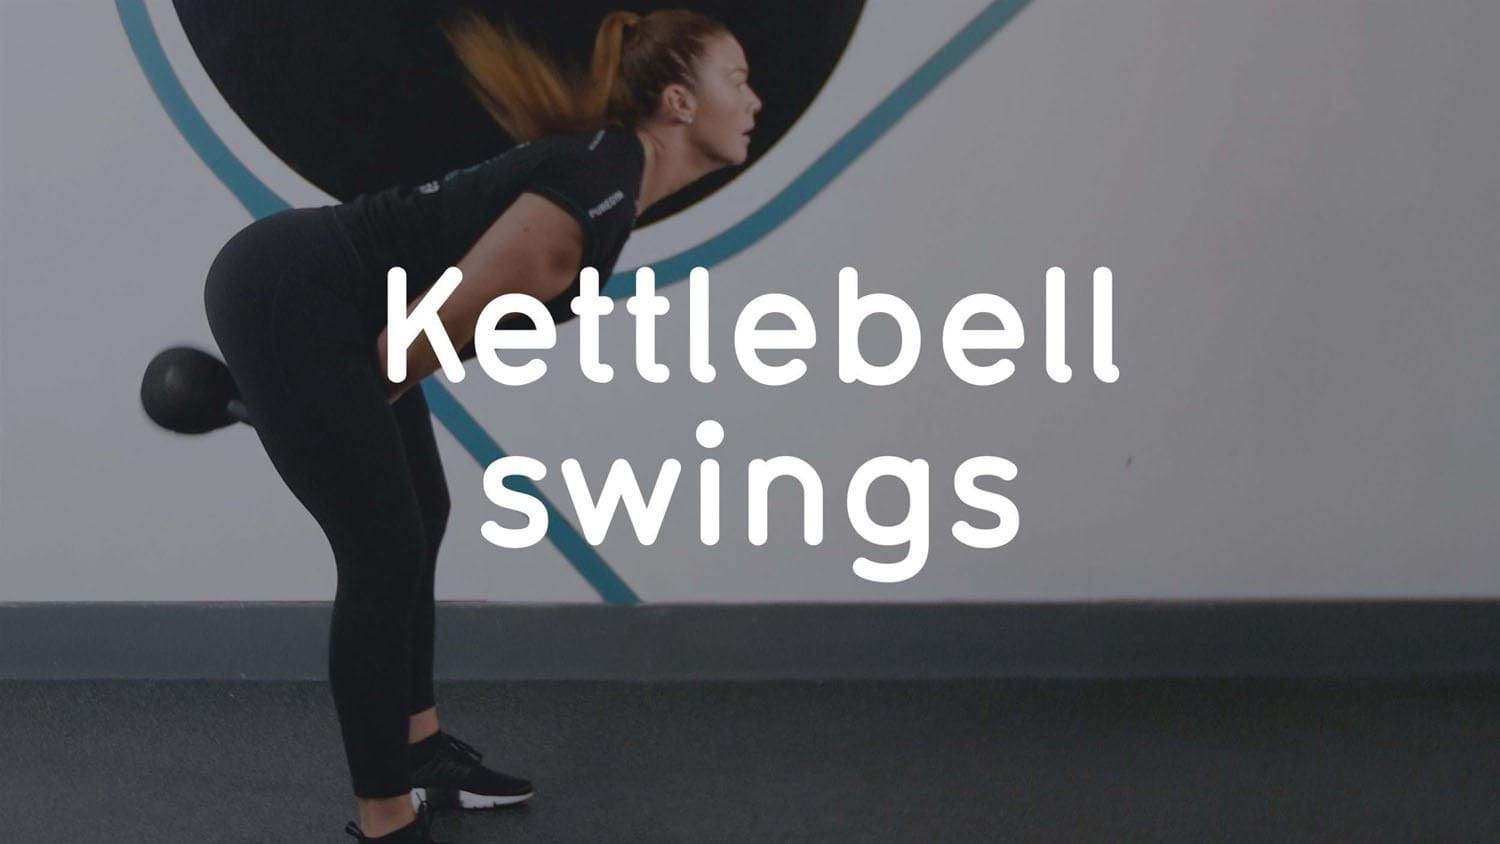 Kettlebell exercises